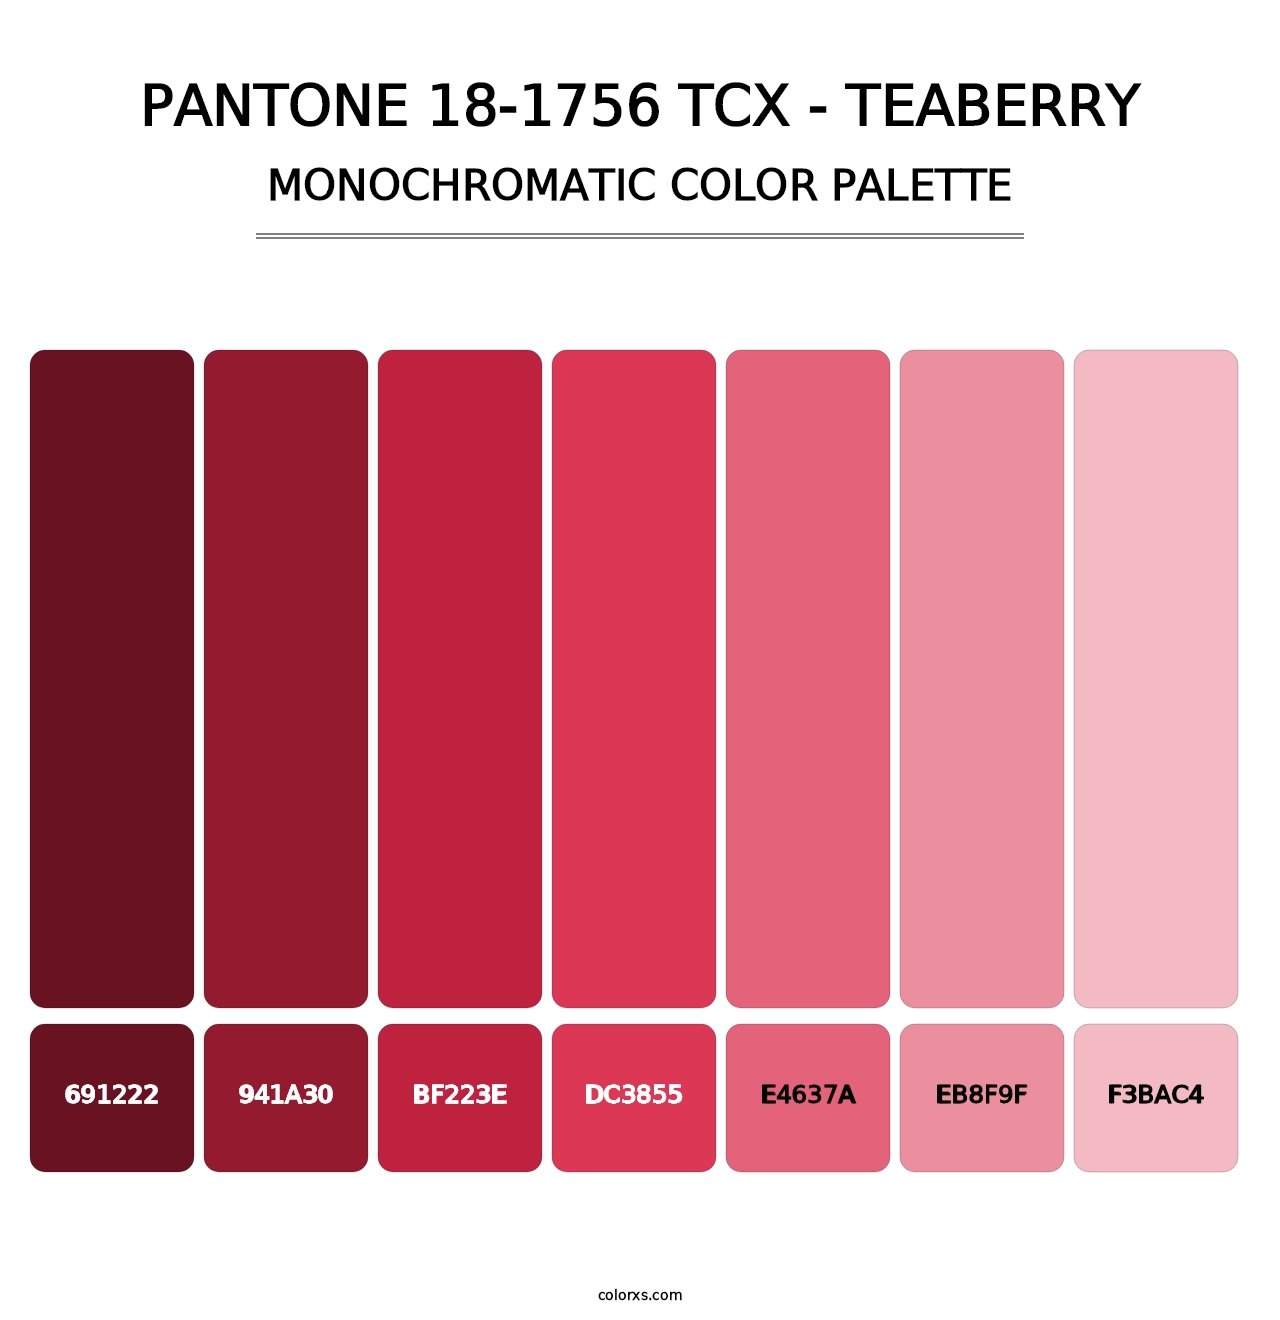 PANTONE 18-1756 TCX - Teaberry - Monochromatic Color Palette